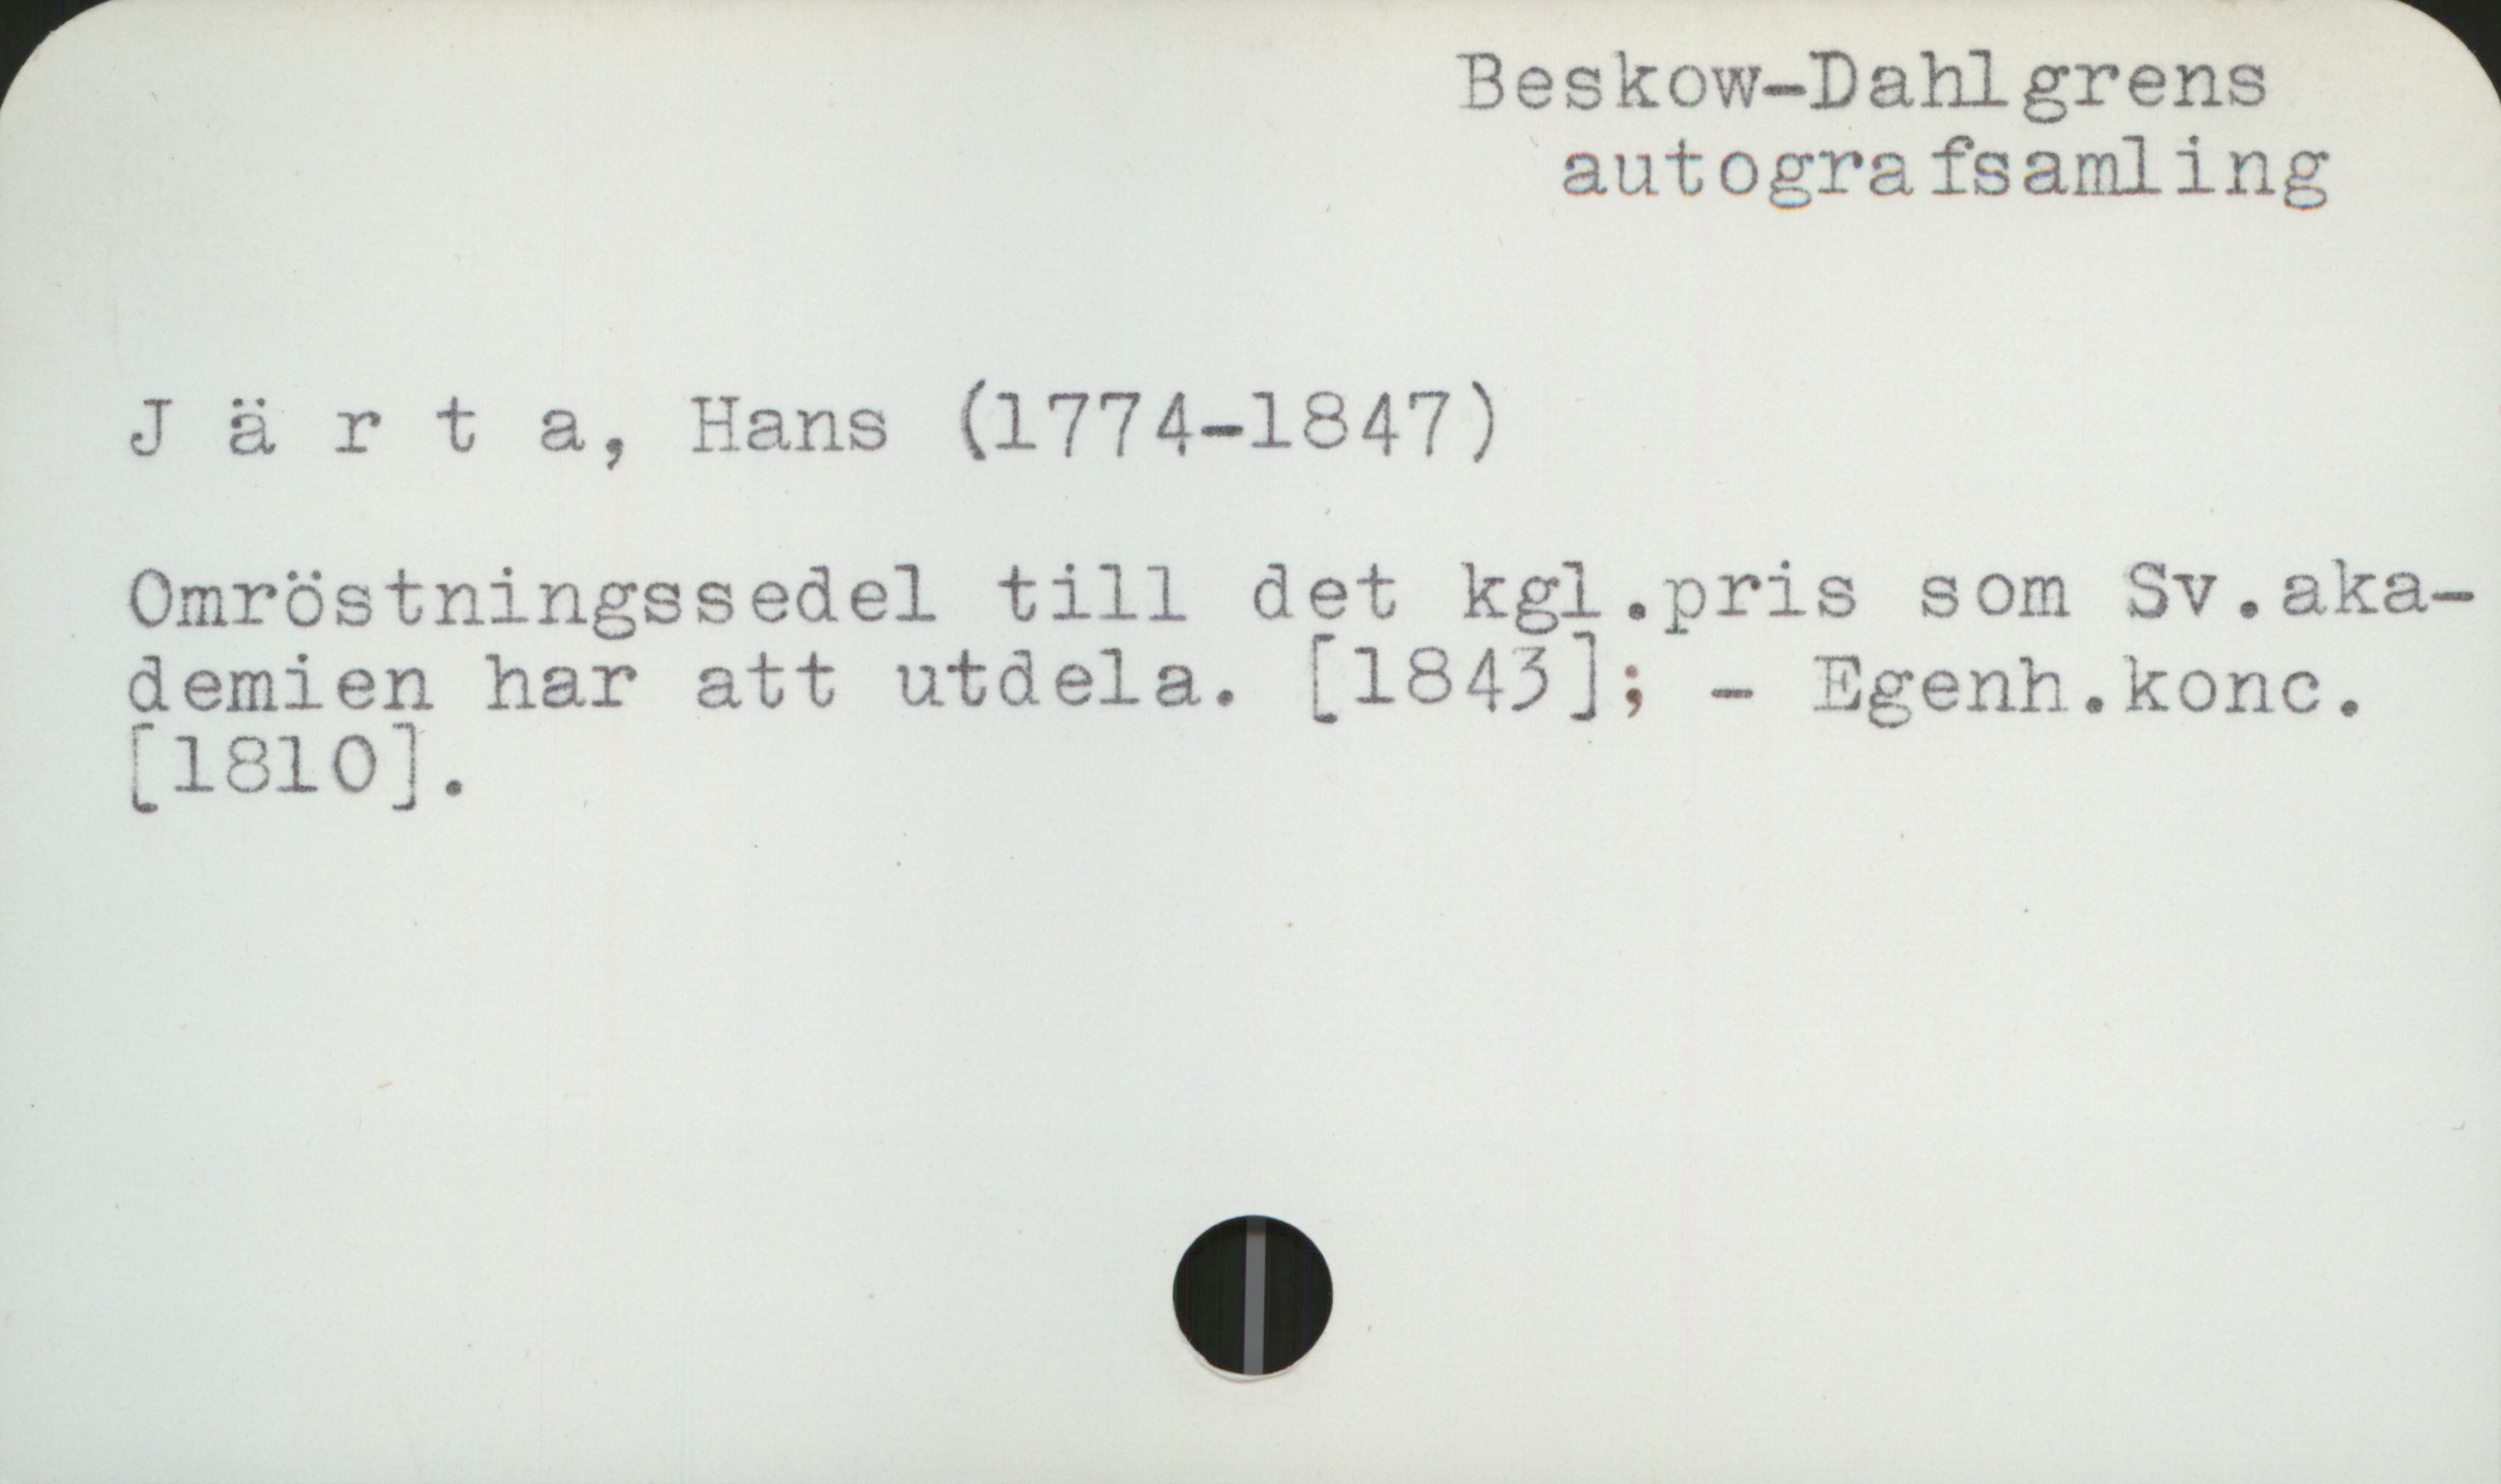 Järta, Hans (1774-1847) Beskow-Dahlgrens autografsamling

Järta, Hans (1774-1847)

Omröstningssedel till det kgl. pris som Sv . aka-
demien har att utdela. [1843];  Egenh. konc.
[1810]